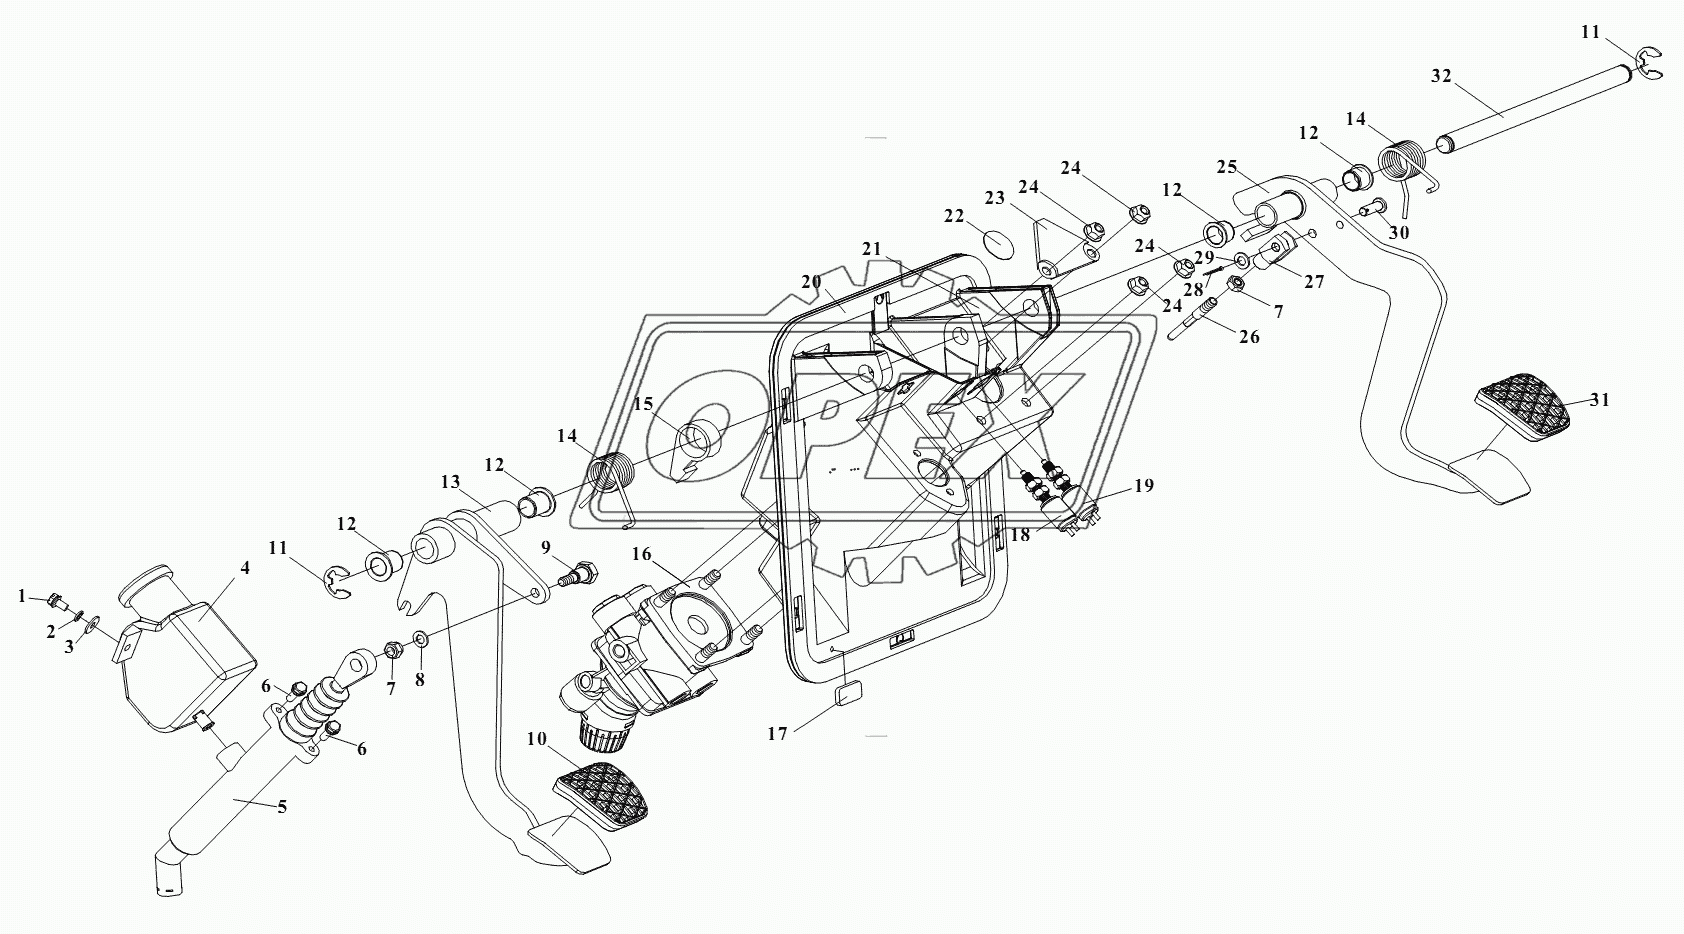 Педаль тормоза с тормозным краном и педаль сцепления с главным цилиндром сцепления